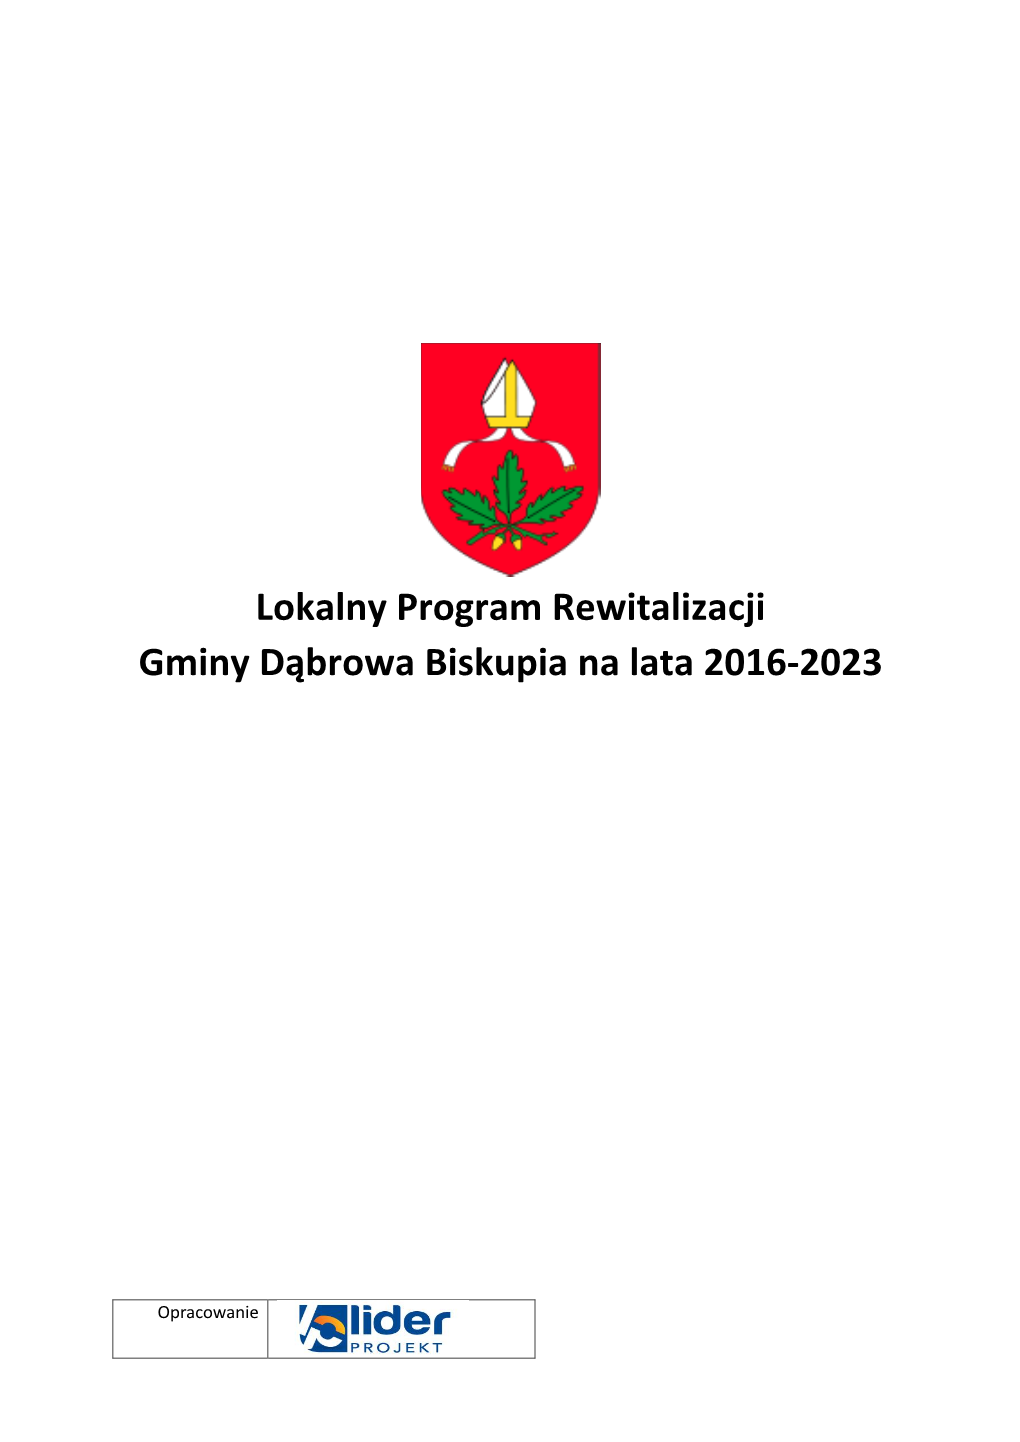 Lokalny Program Rewitalizacji Gminy Dąbrowa Biskupia Na Lata 2016-2023